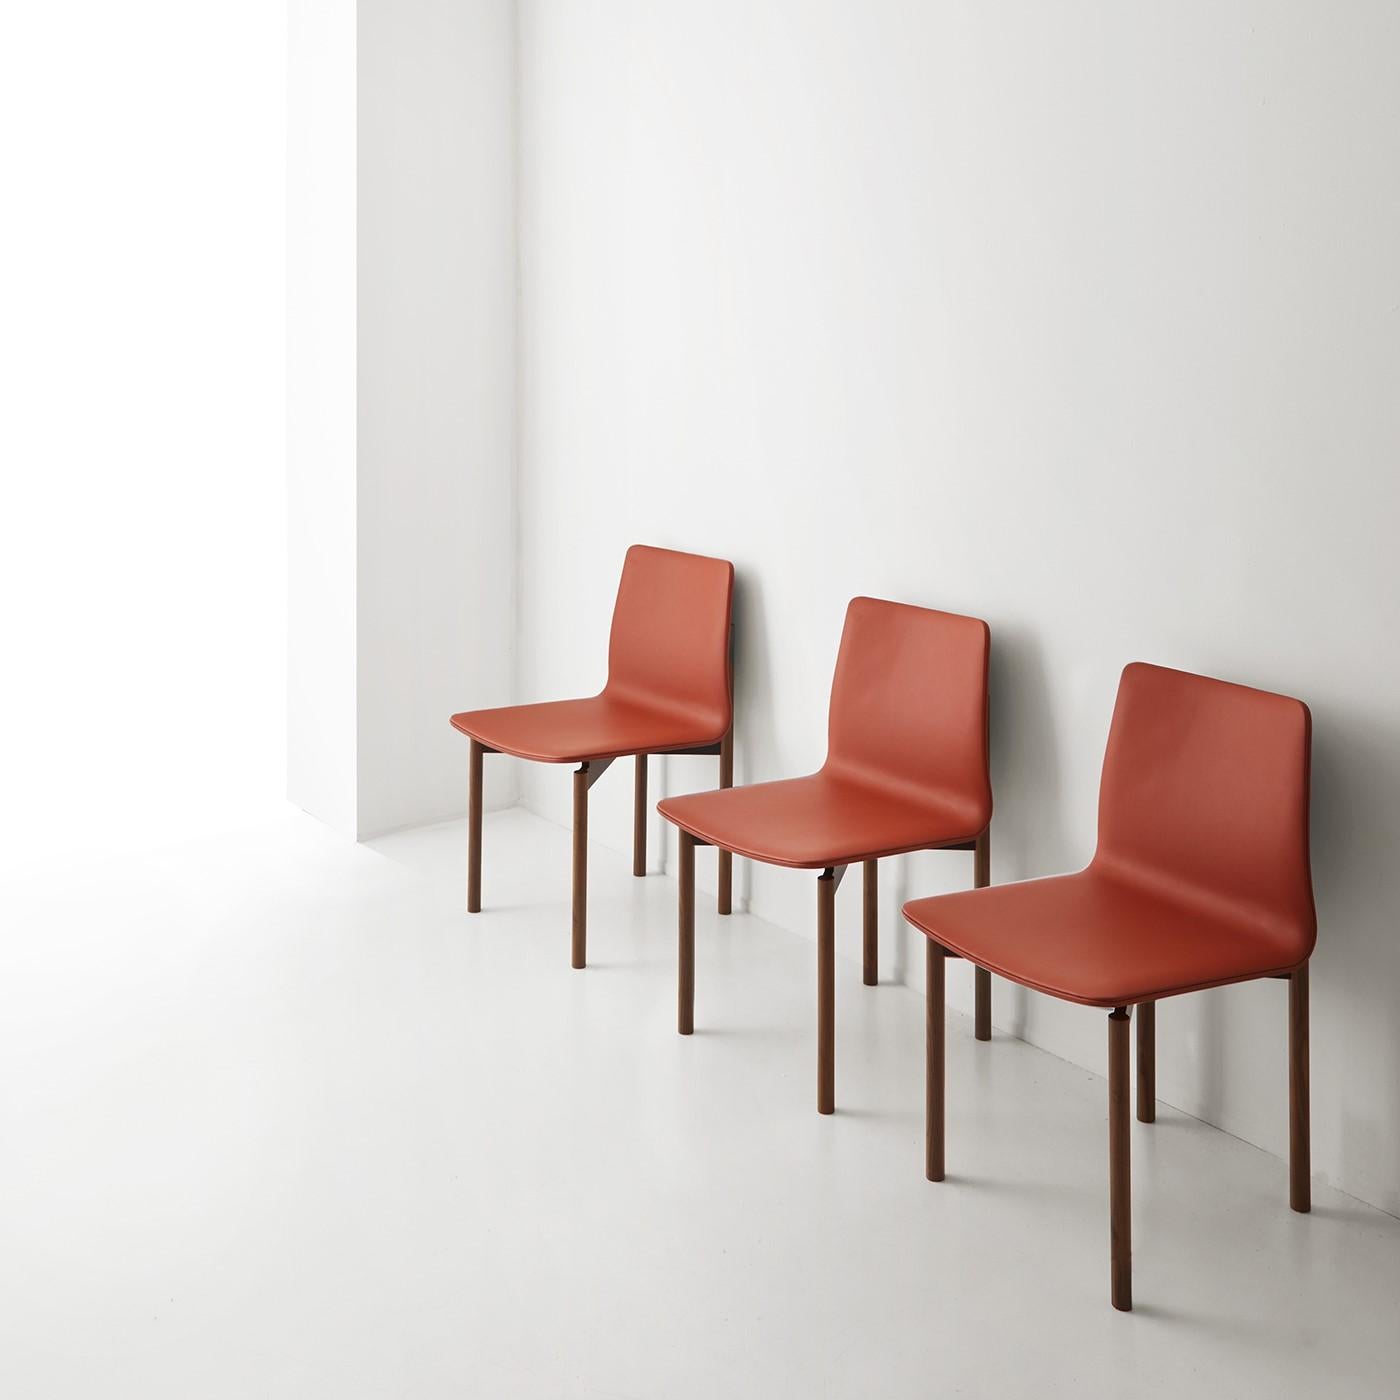 Der Stuhl mit einer essentiellen Form ist aus massivem Walnussholz gefertigt und mit Leder bezogen. Die Besonderheit dieses Stuhls liegt in der Holzbearbeitung der Rückenlehne und in seiner Größe. Er ist in verschiedenen Lederfarben und anderen